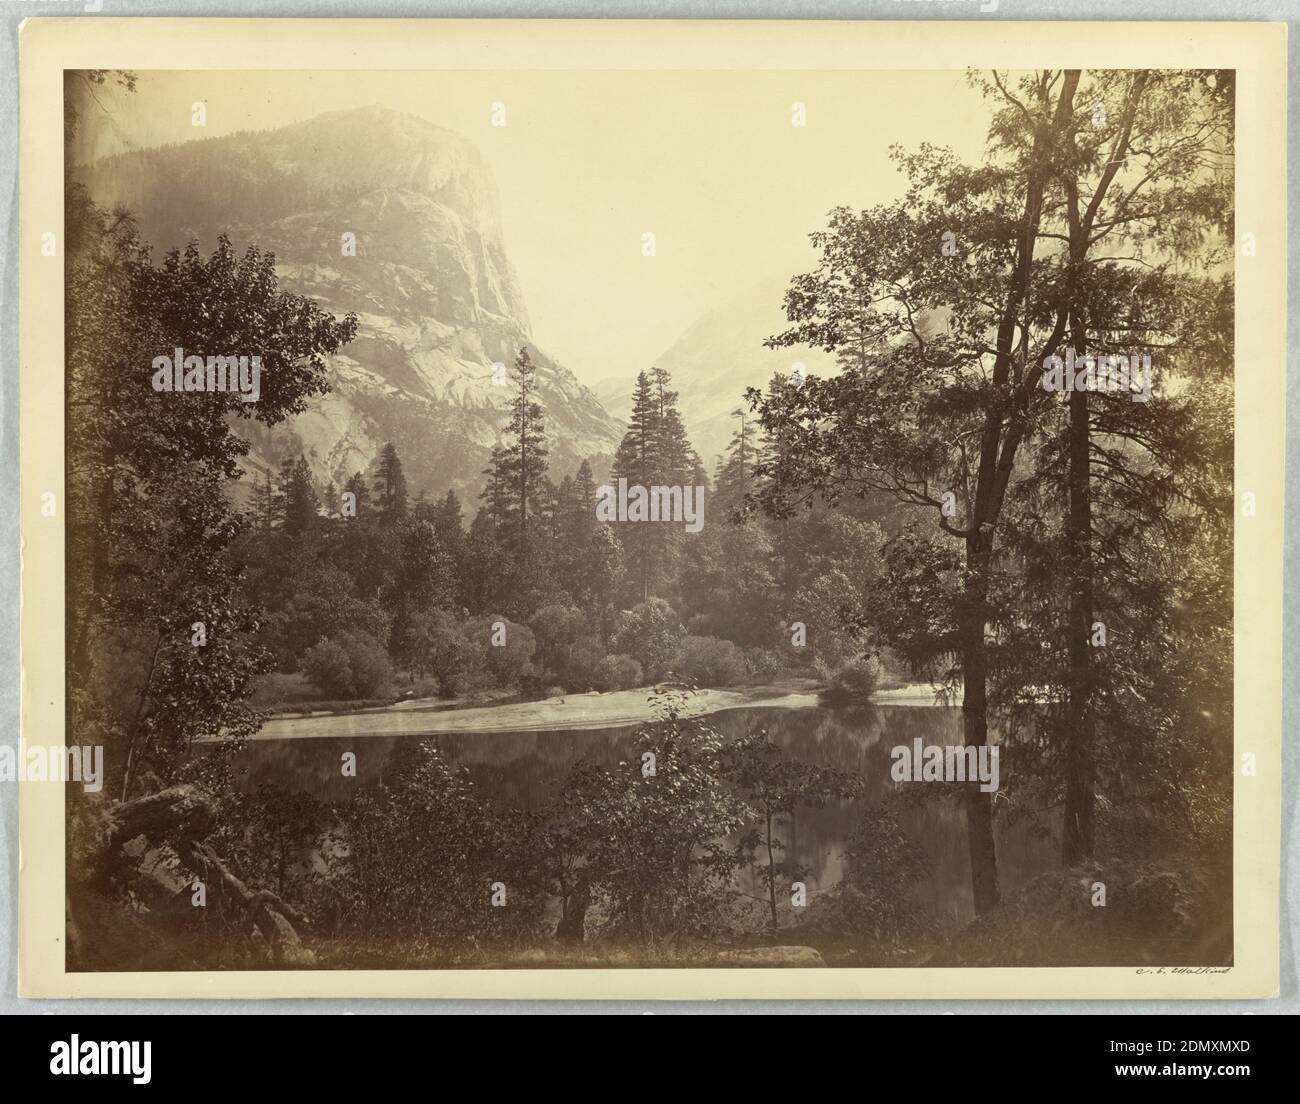 Lake Ah-Wi-Yah, Yosemite, Albumen Silberdruck, USA, 1861, Landschaften, Fotografie, Fotografie Stockfoto